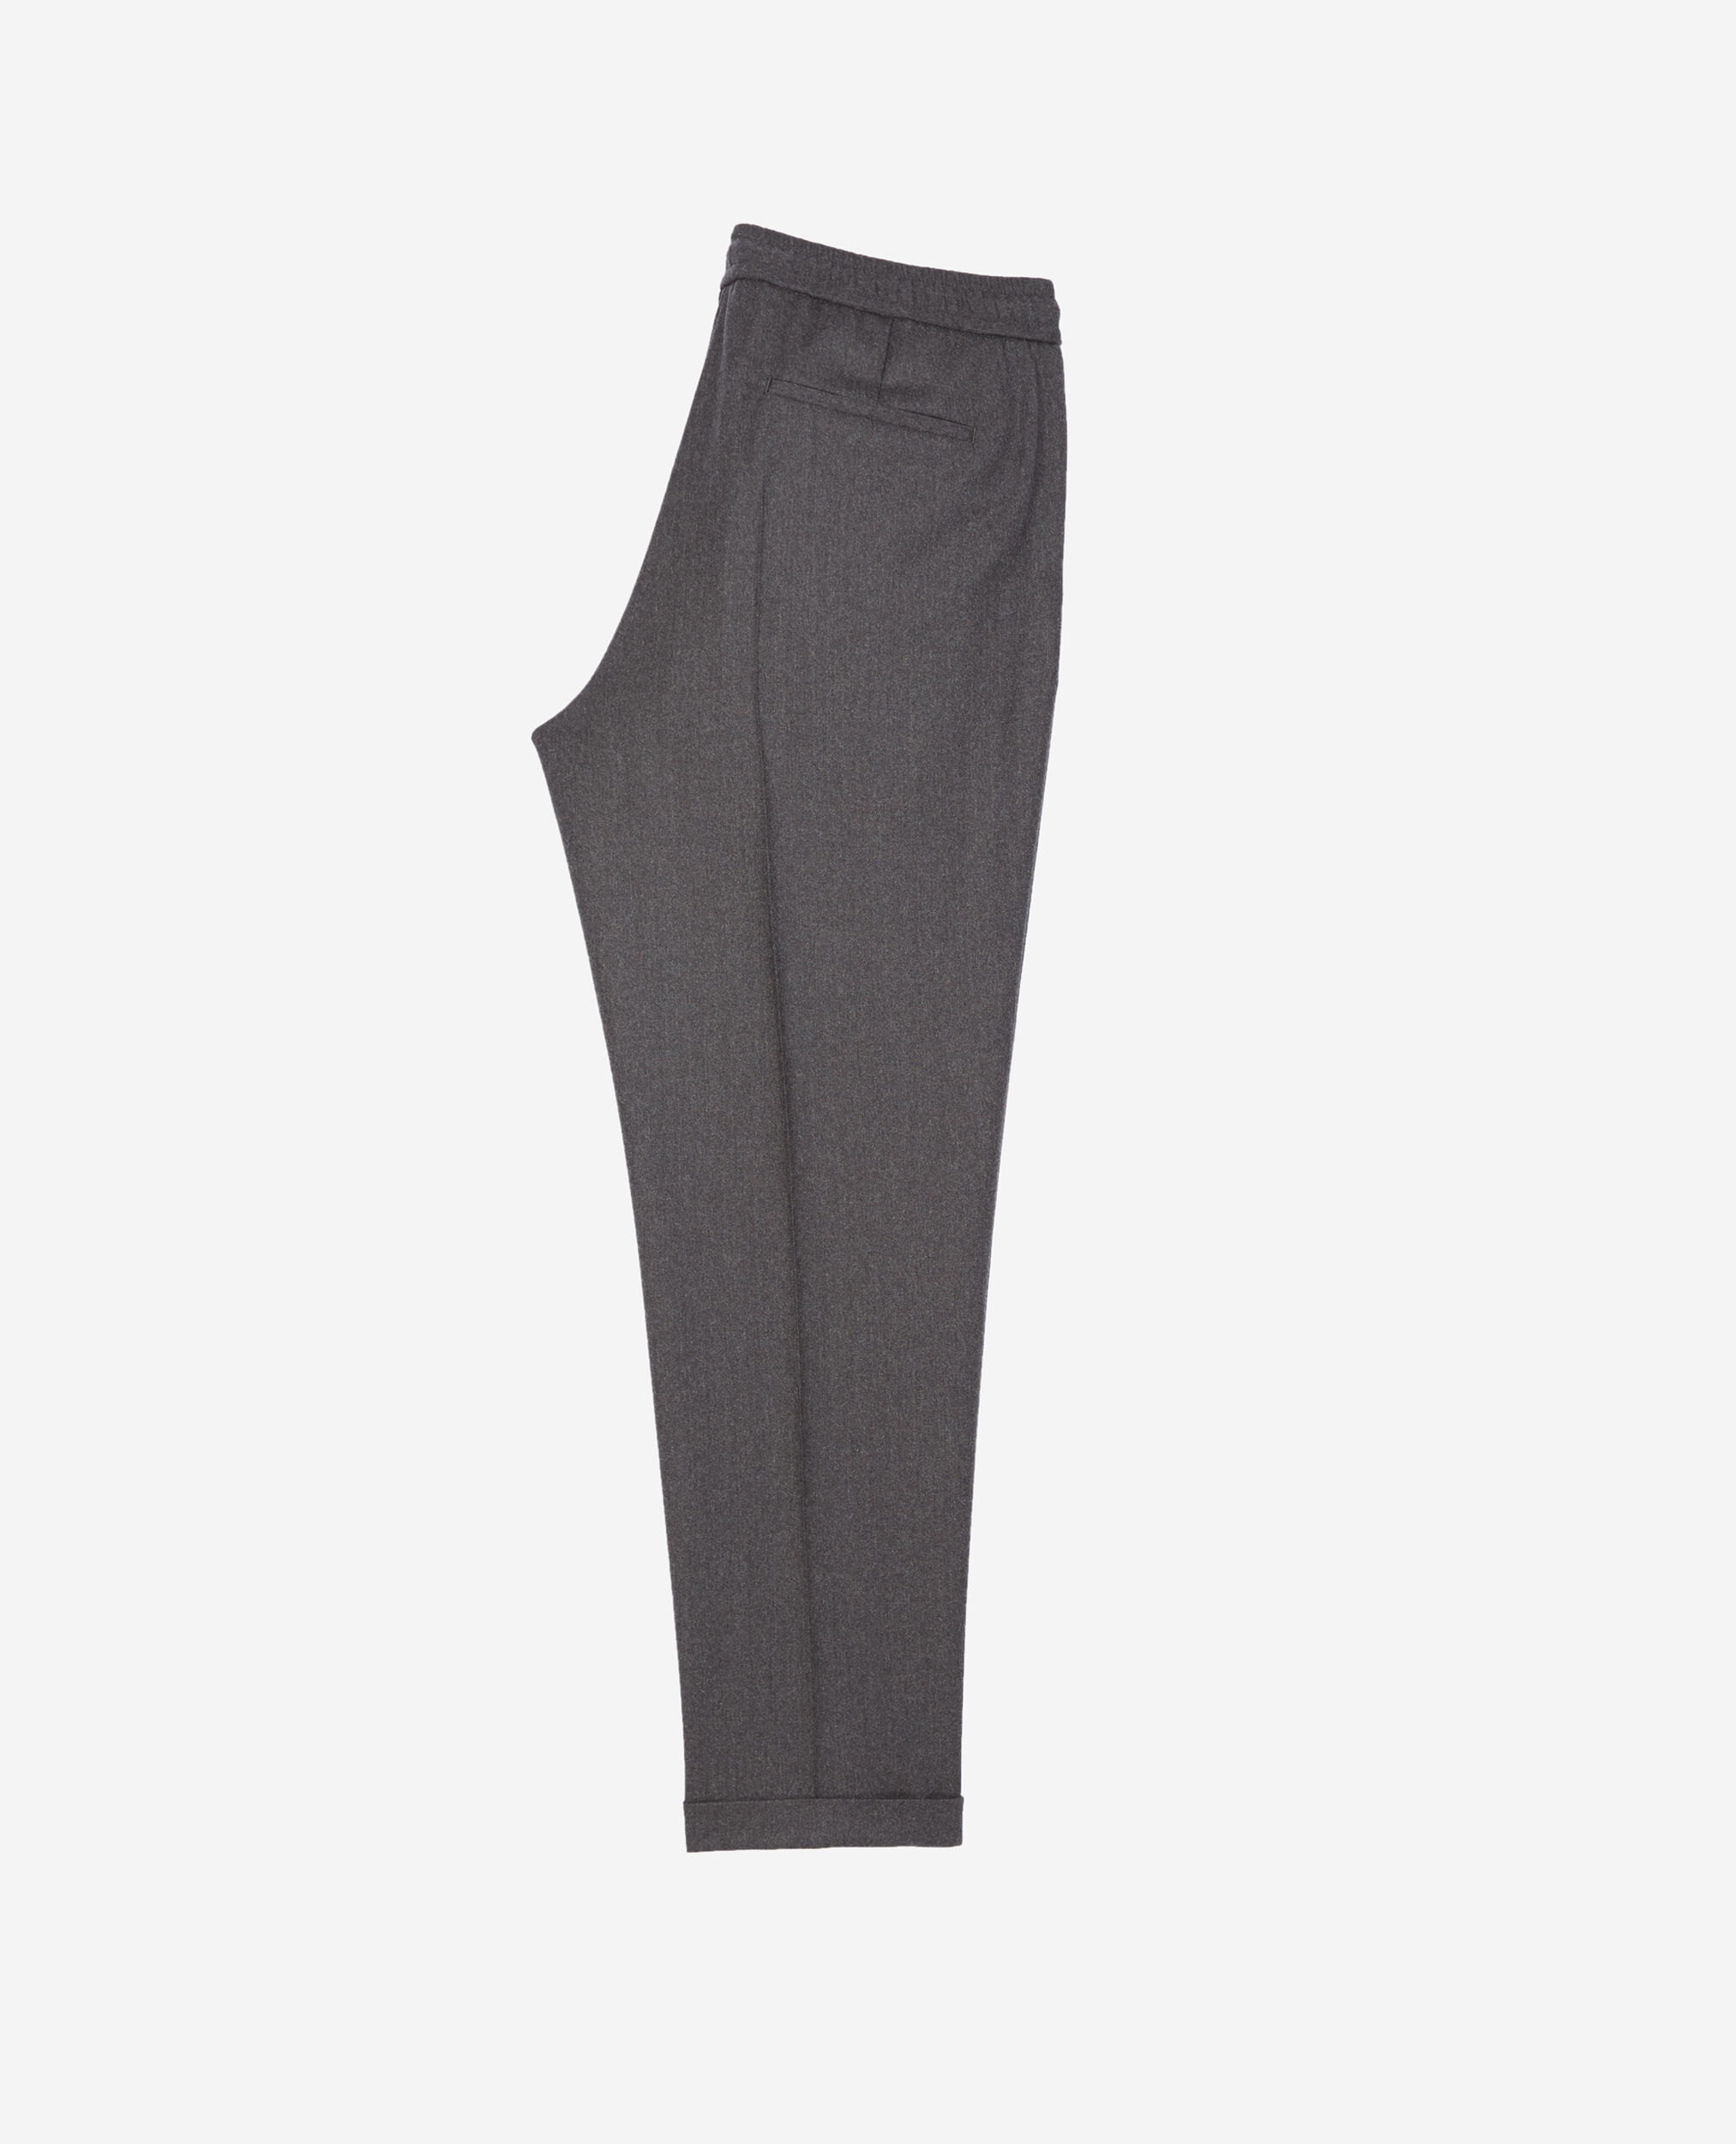 Pantalon laine gris à élastique, DARK GREY, hi-res image number null